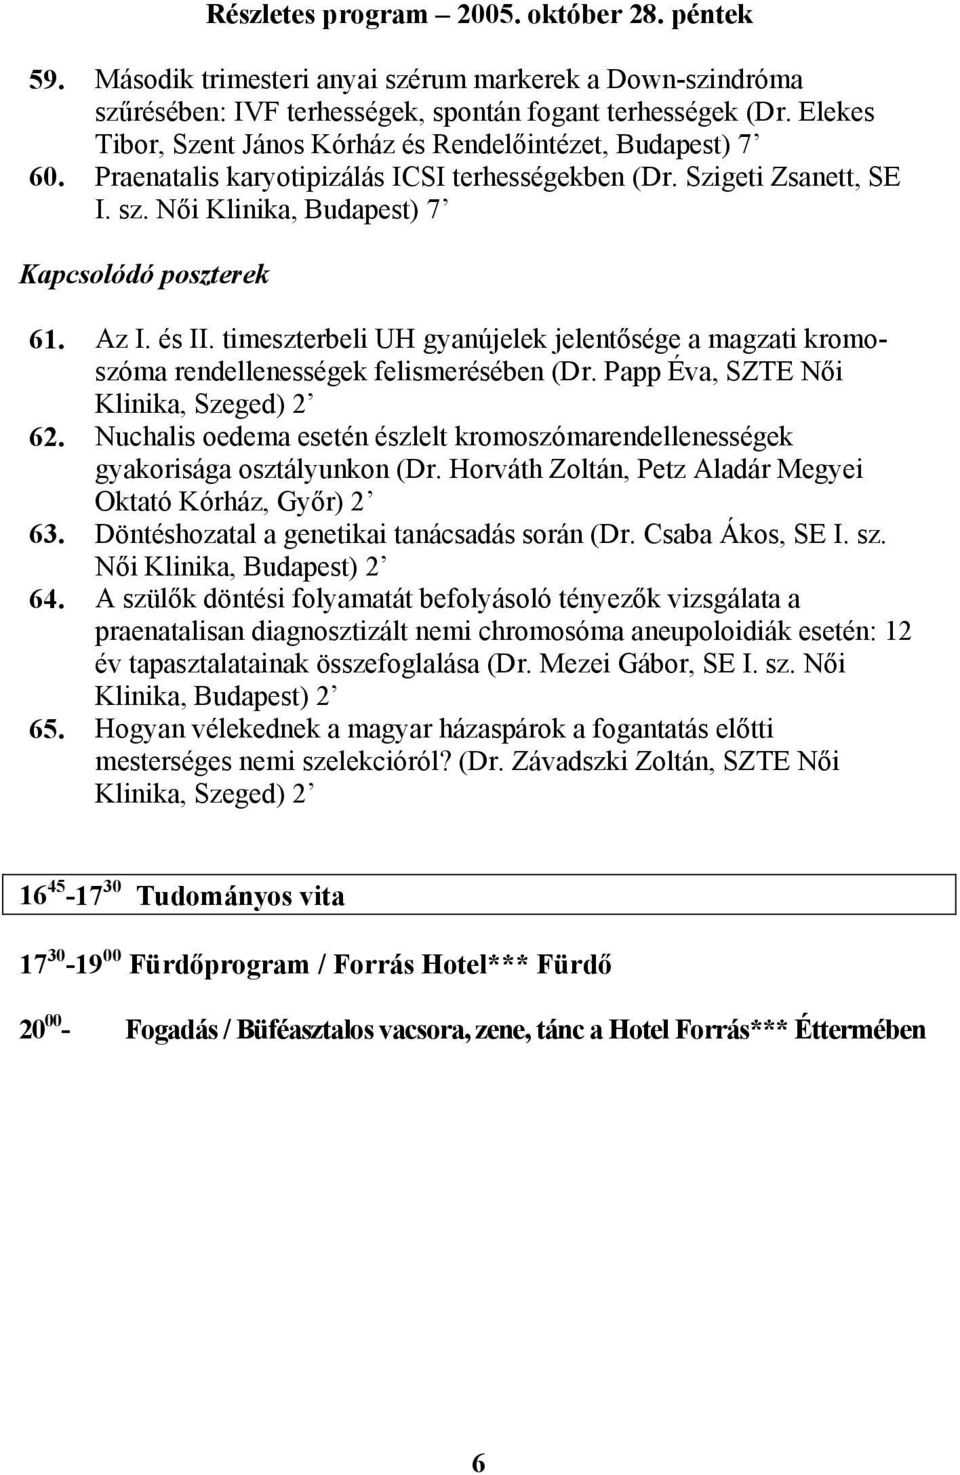 timeszterbeli UH gyanújelek jelentősége a magzati kromoszóma rendellenességek felismerésében (Dr. Papp Éva, SZTE Női Klinika, Szeged) 2 62.